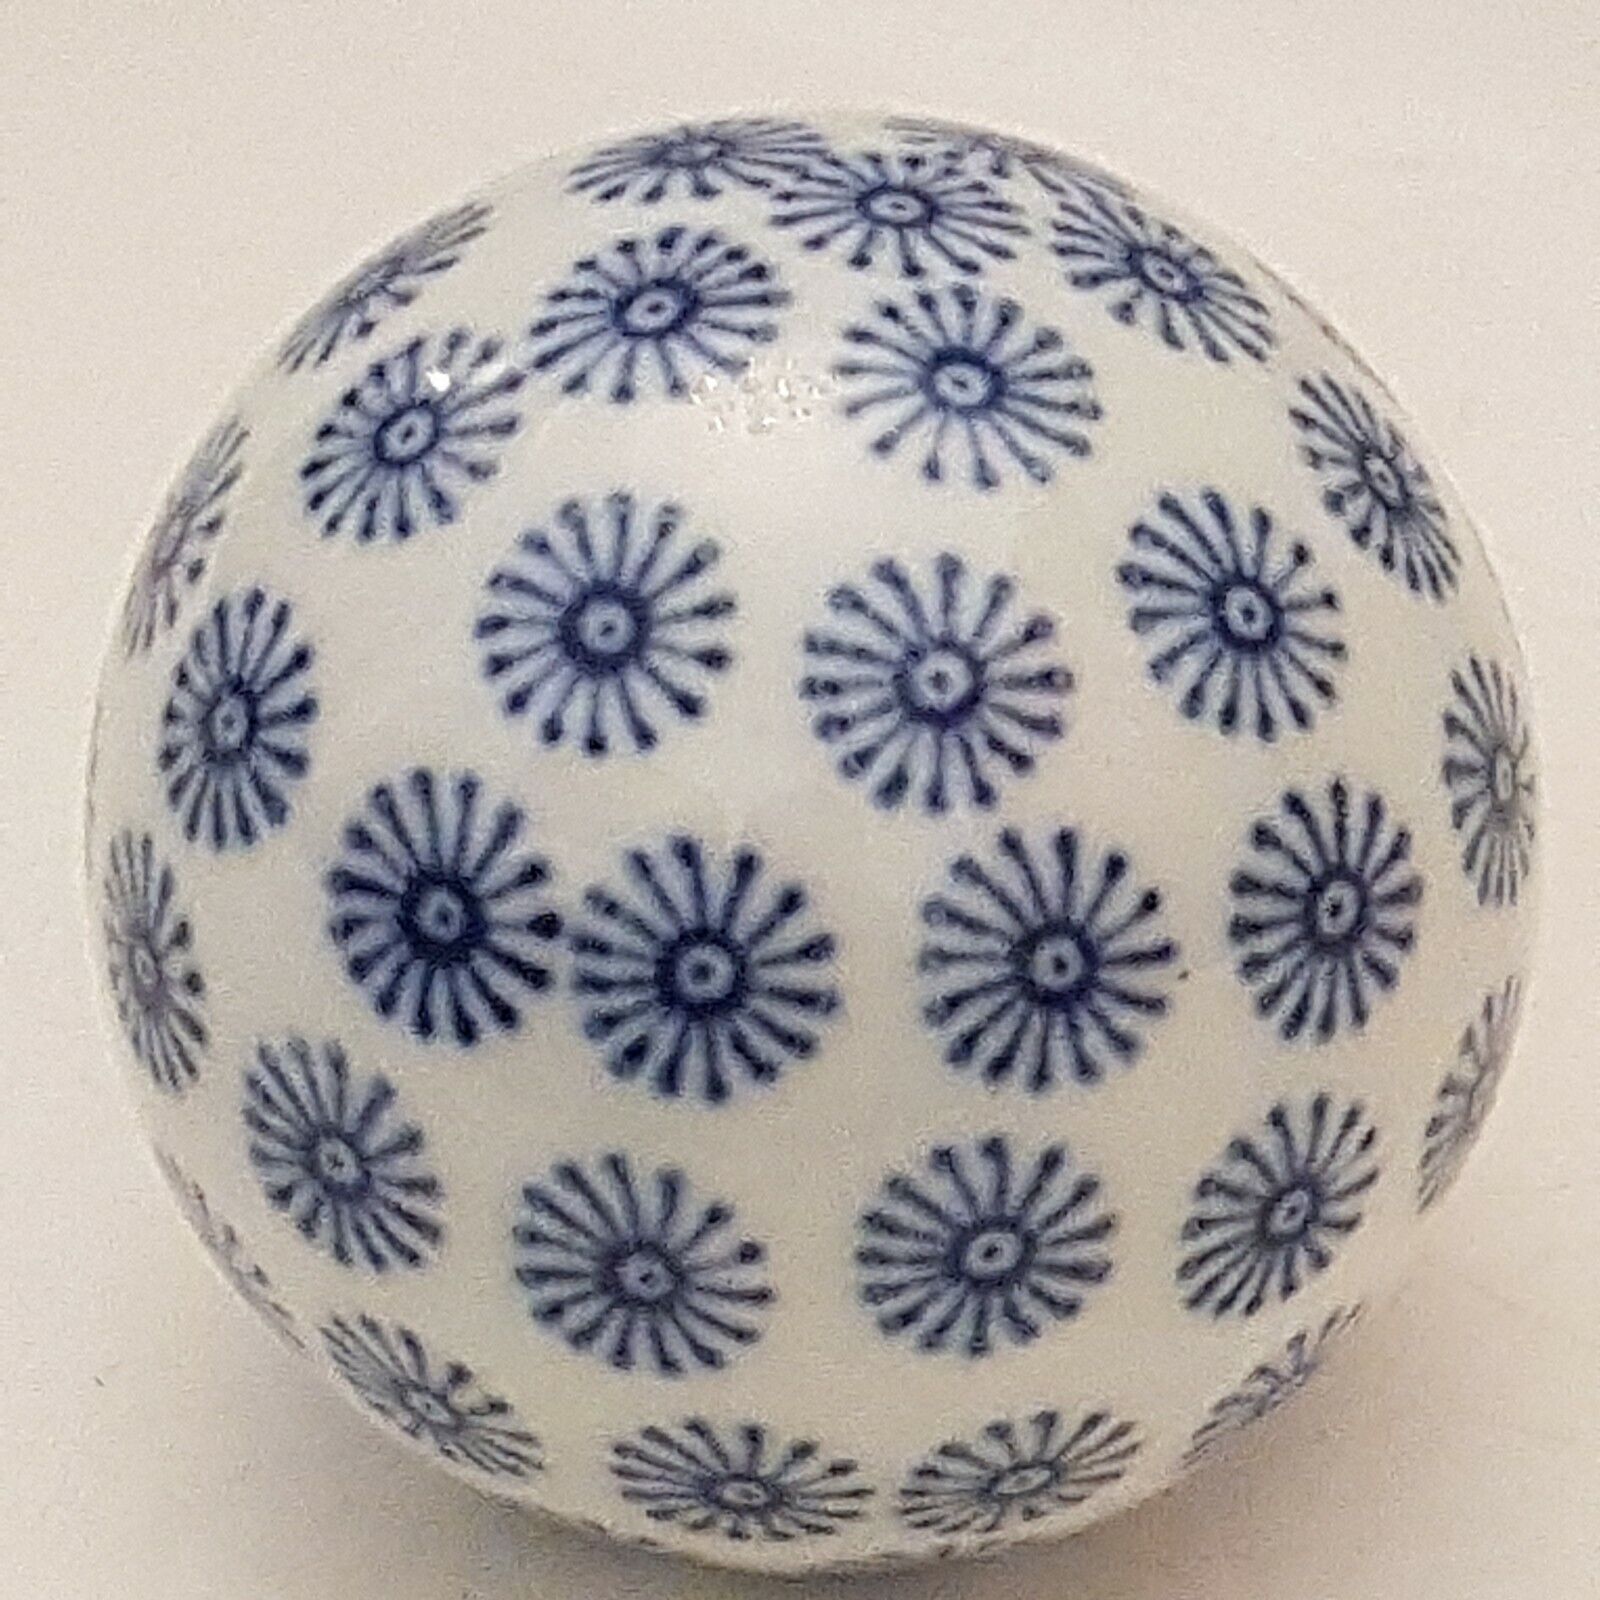 Set Of 6 Blue And White Decorative China Balls Medium Sized Carpet Balls Sprzedaż wysyłkowa tanio